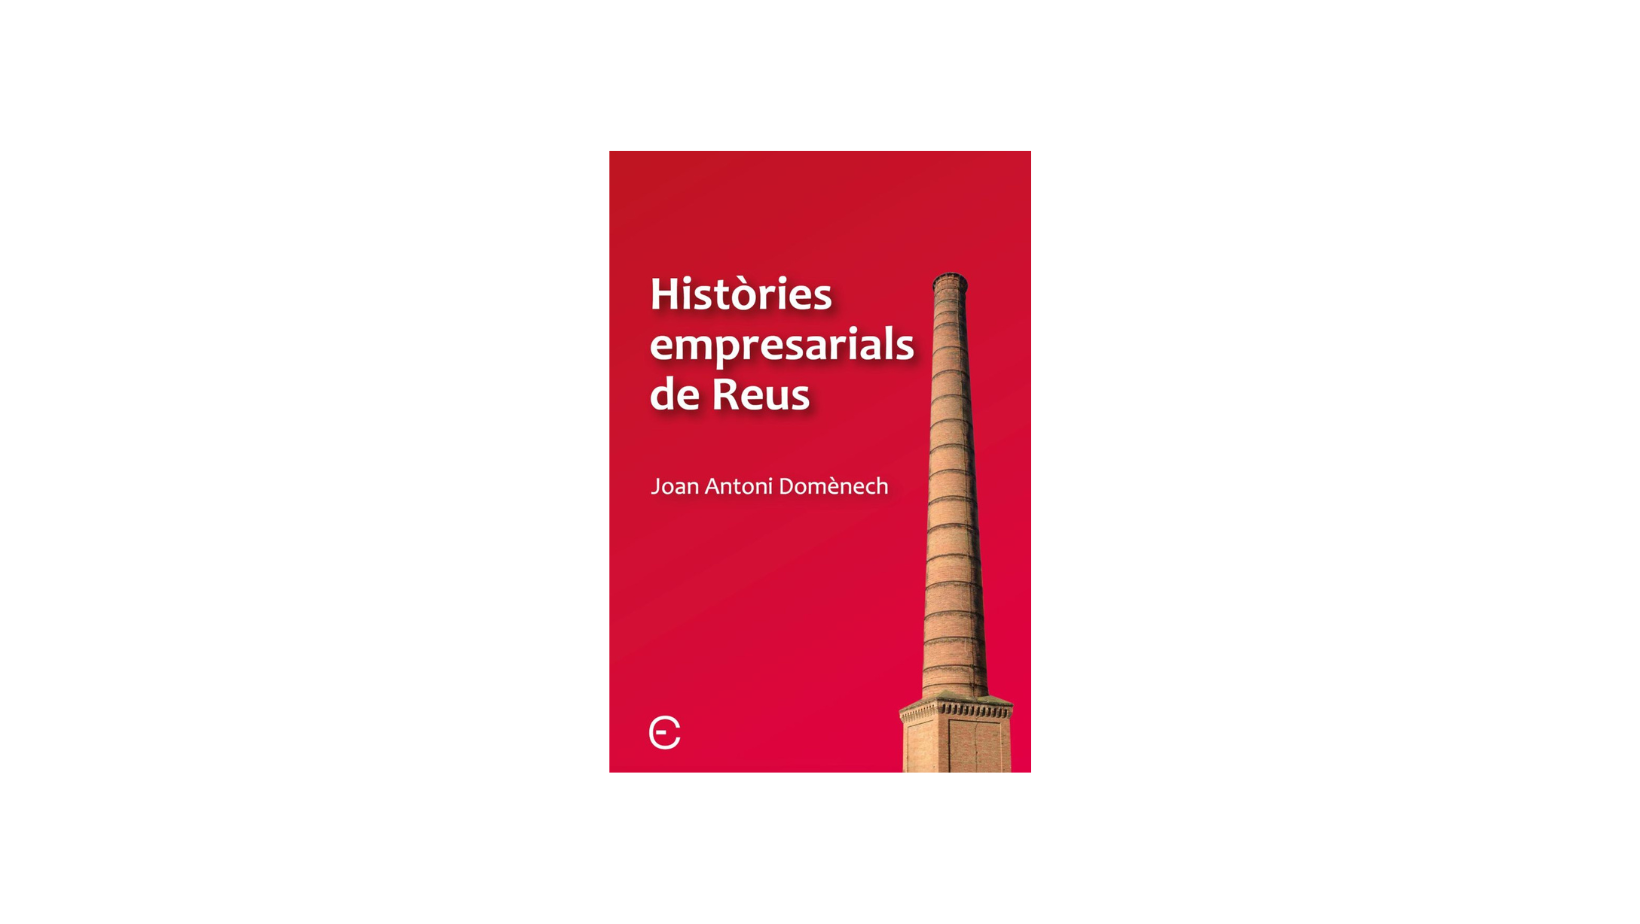 Presentació del llibre “Històries empresarials de Reus